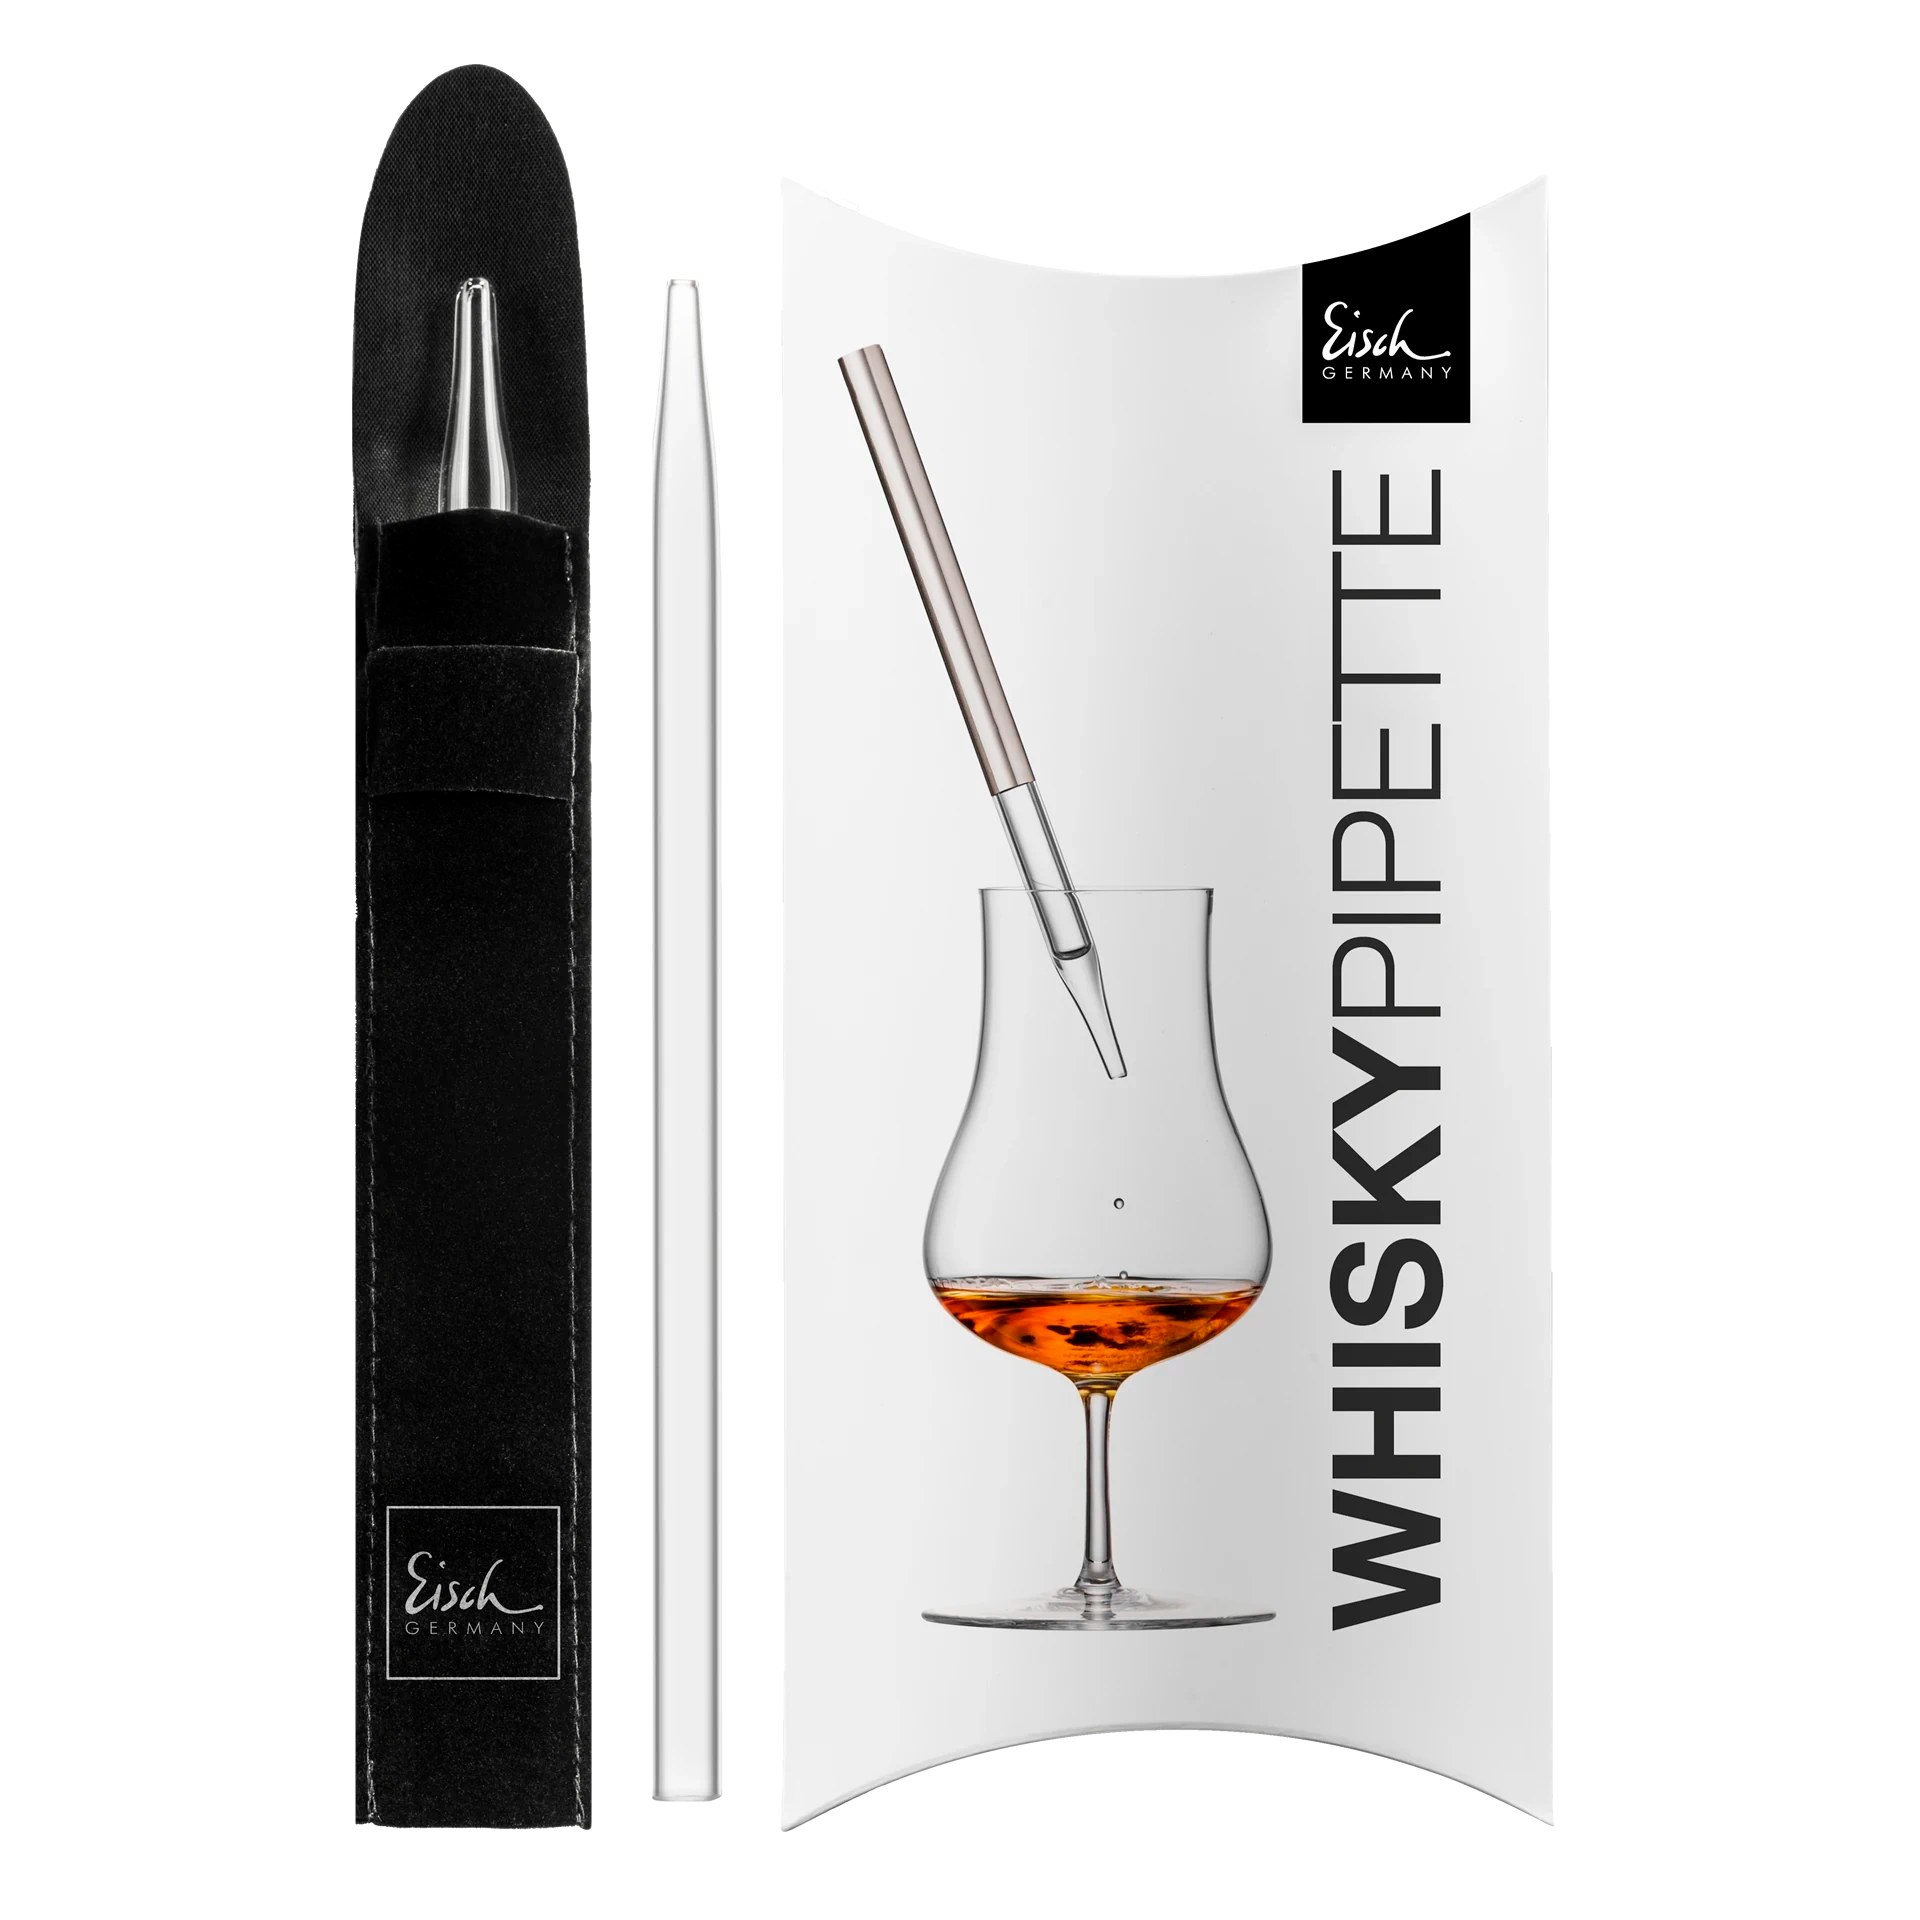 EISCH Germany Coffret cadeau Whisky Malt Unity Sensis plus avec Verre à Eau  et Pipette - Interismo